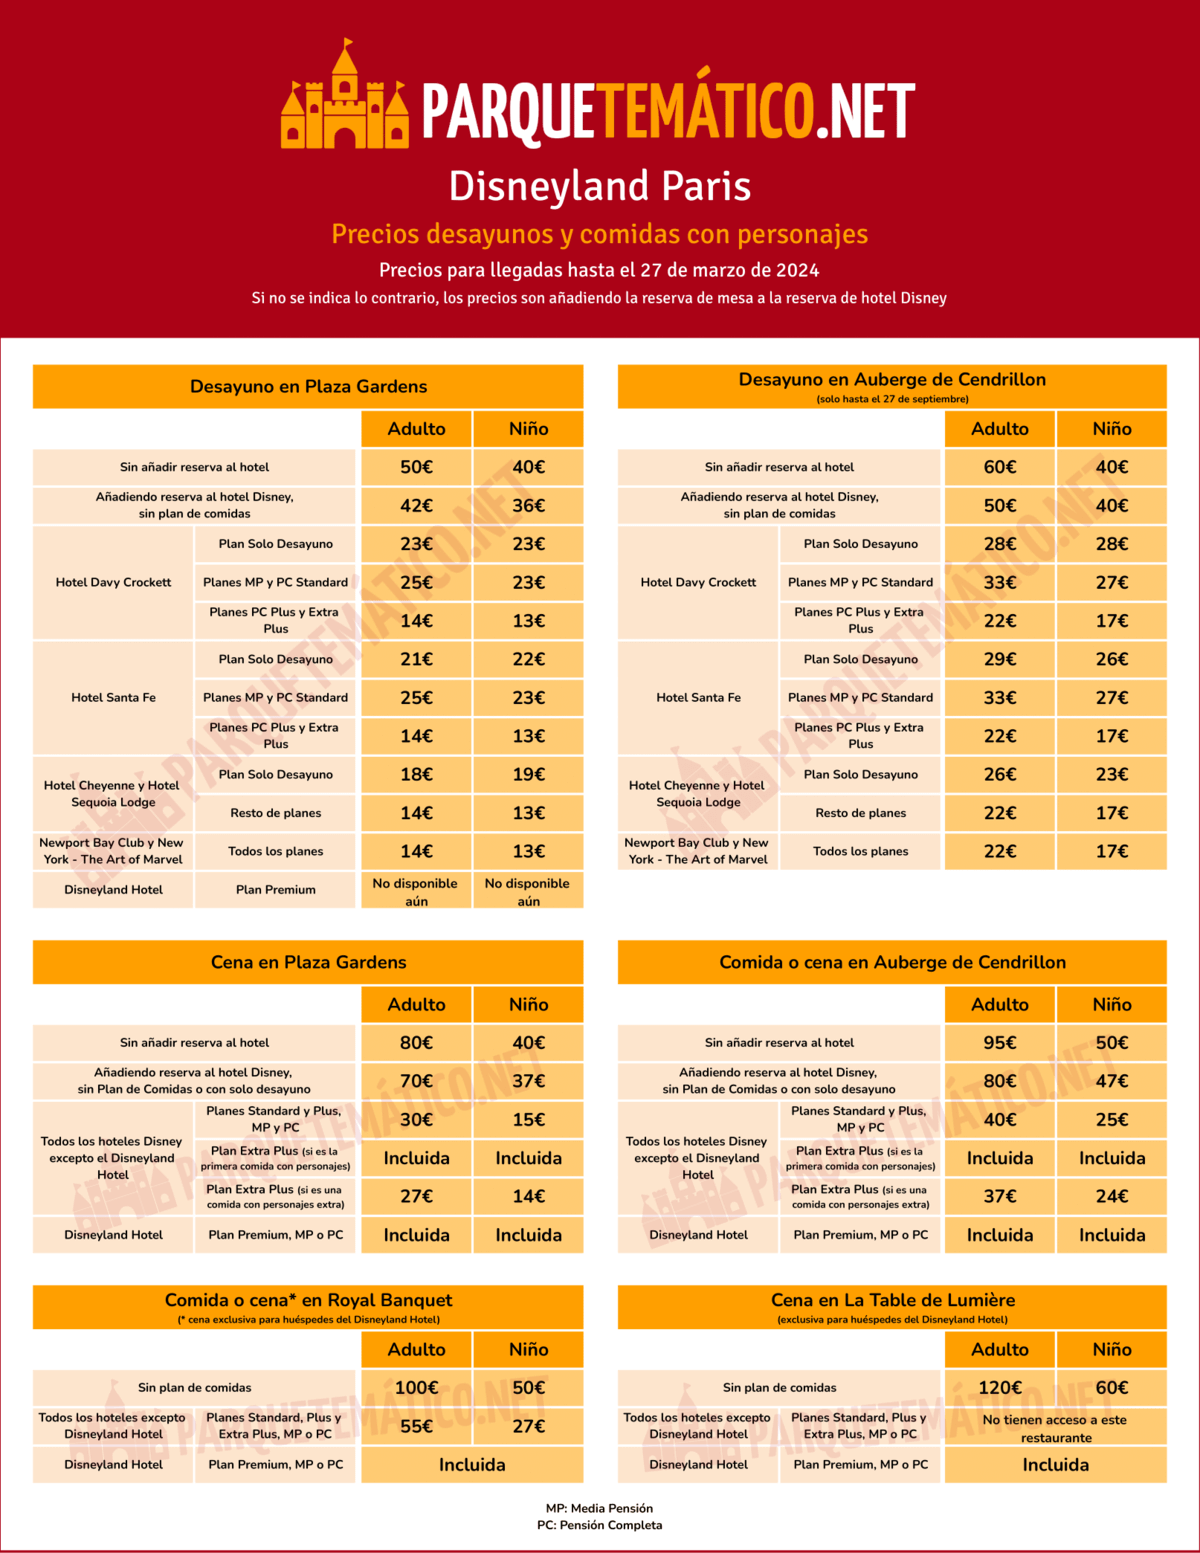 Precios de comidas con personajes Disneyland Paris con y sin plan de comidas - Valido hasta el 27 de marzo de 2024